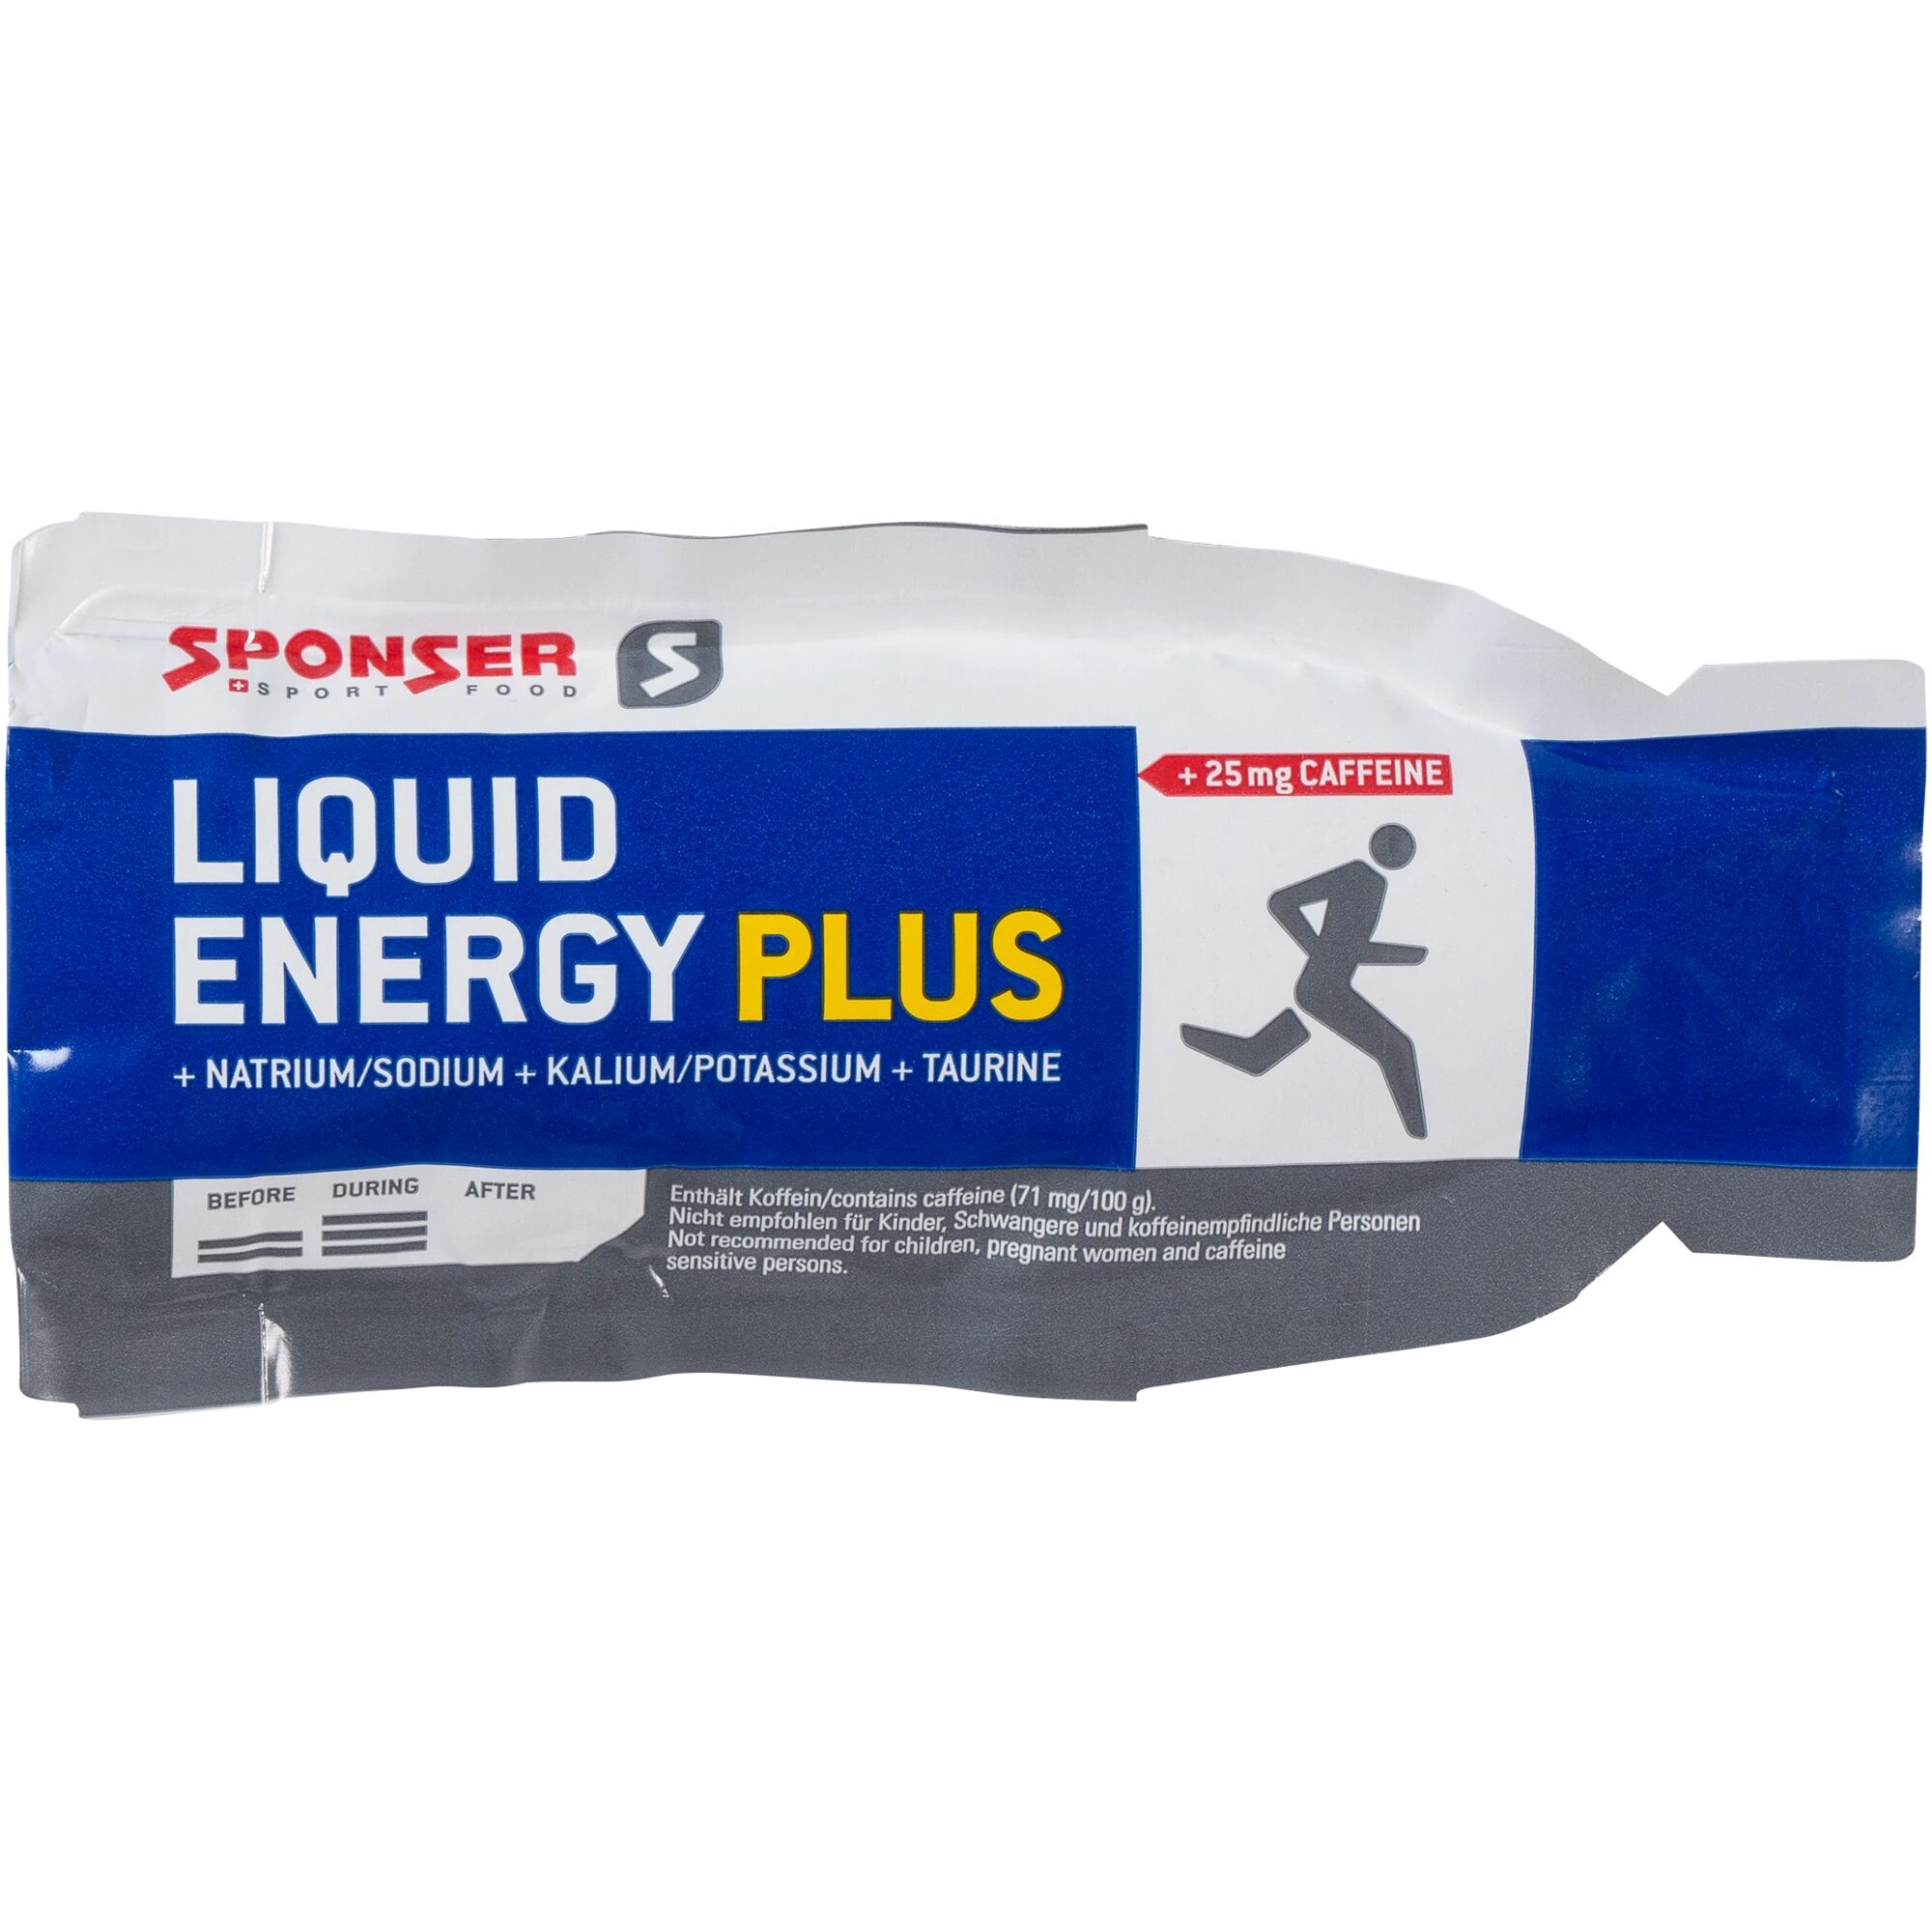 Sponser Liquid Energy Plus Sachet 40g STD